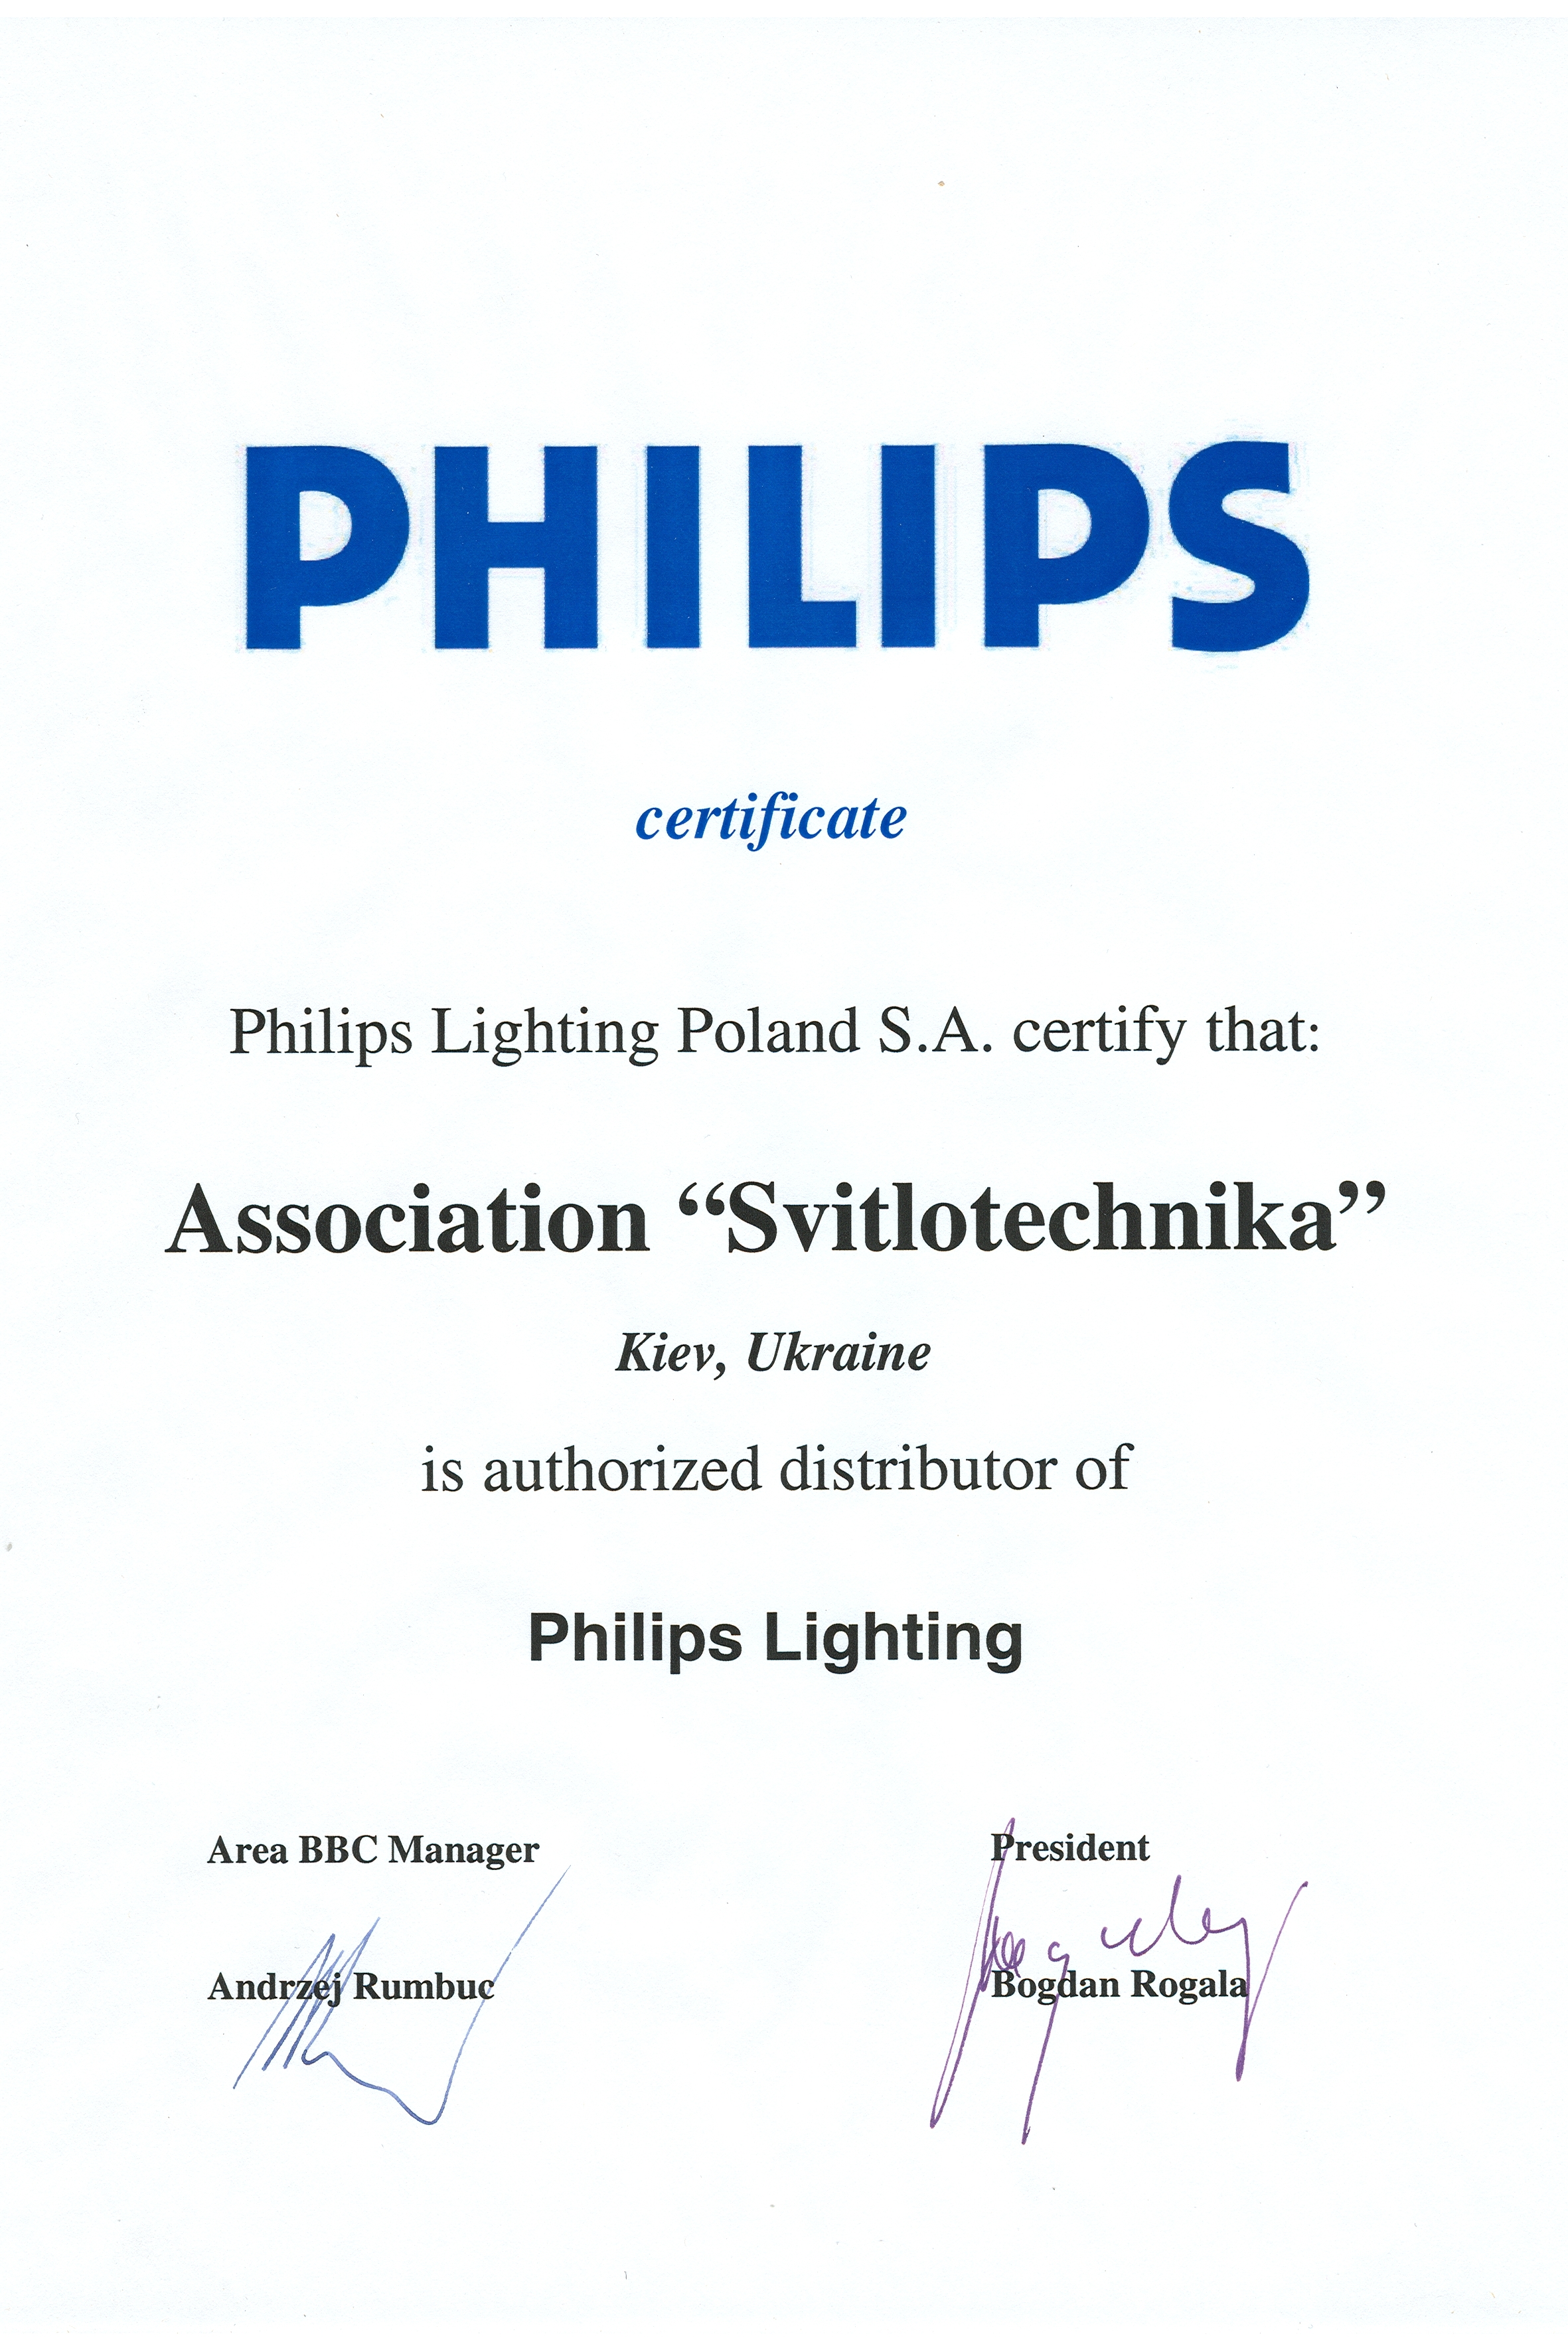 Филипс Лайтинг Польша подтверждает, что Ассоциация Светотехника Киев, Украина является авторизированным дистрибьютором компании ФИЛИПС ЛАЙТИНГ